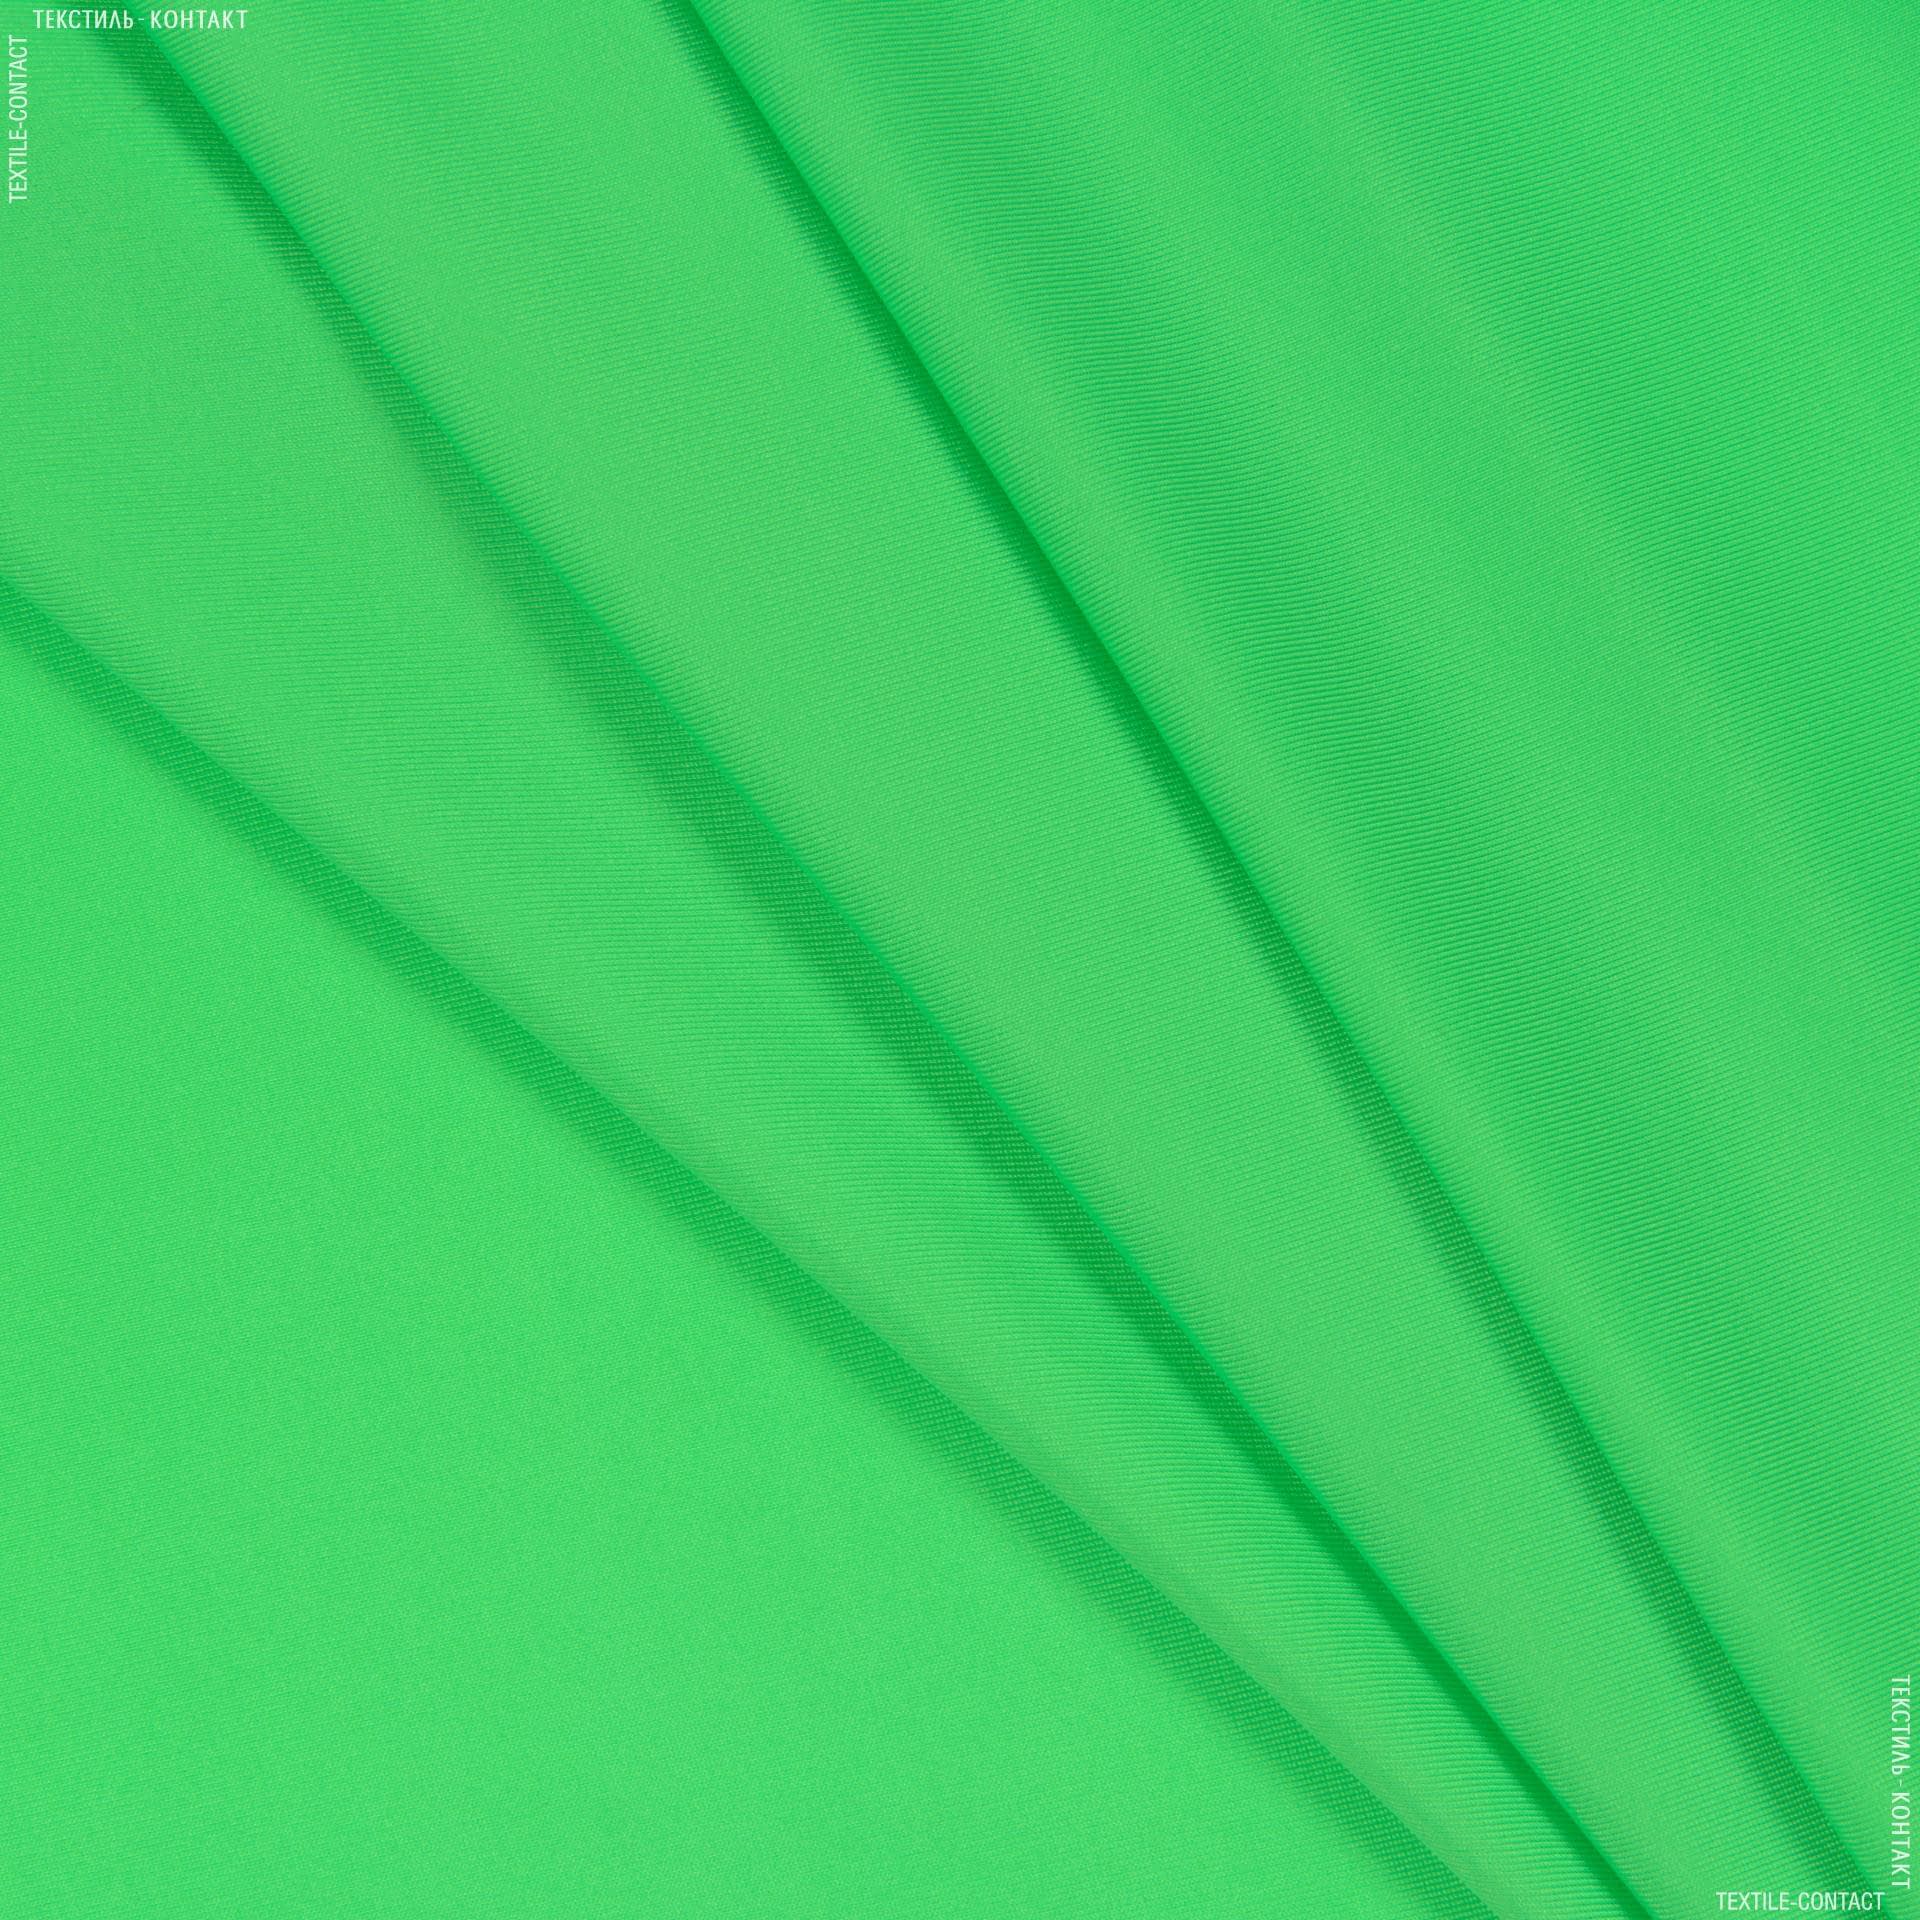 Тканини для спортивного одягу - Біфлекс яскраво-зелений